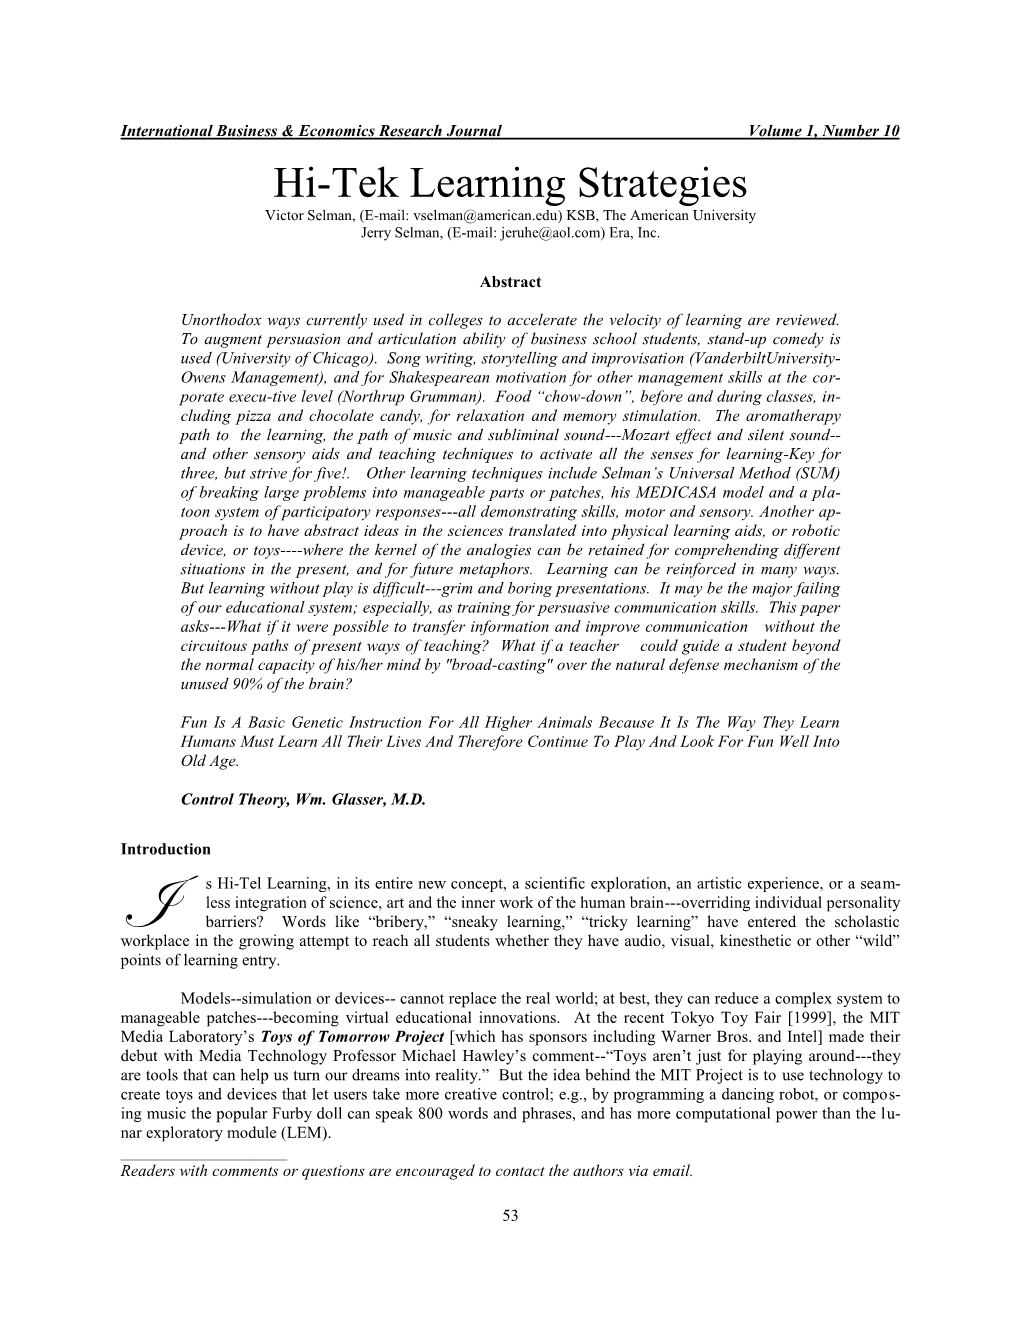 Hi-Tek Learning Strategies Victor Selman, (E-Mail: Vselman@American.Edu) KSB, the American University Jerry Selman, (E-Mail: Jeruhe@Aol.Com) Era, Inc